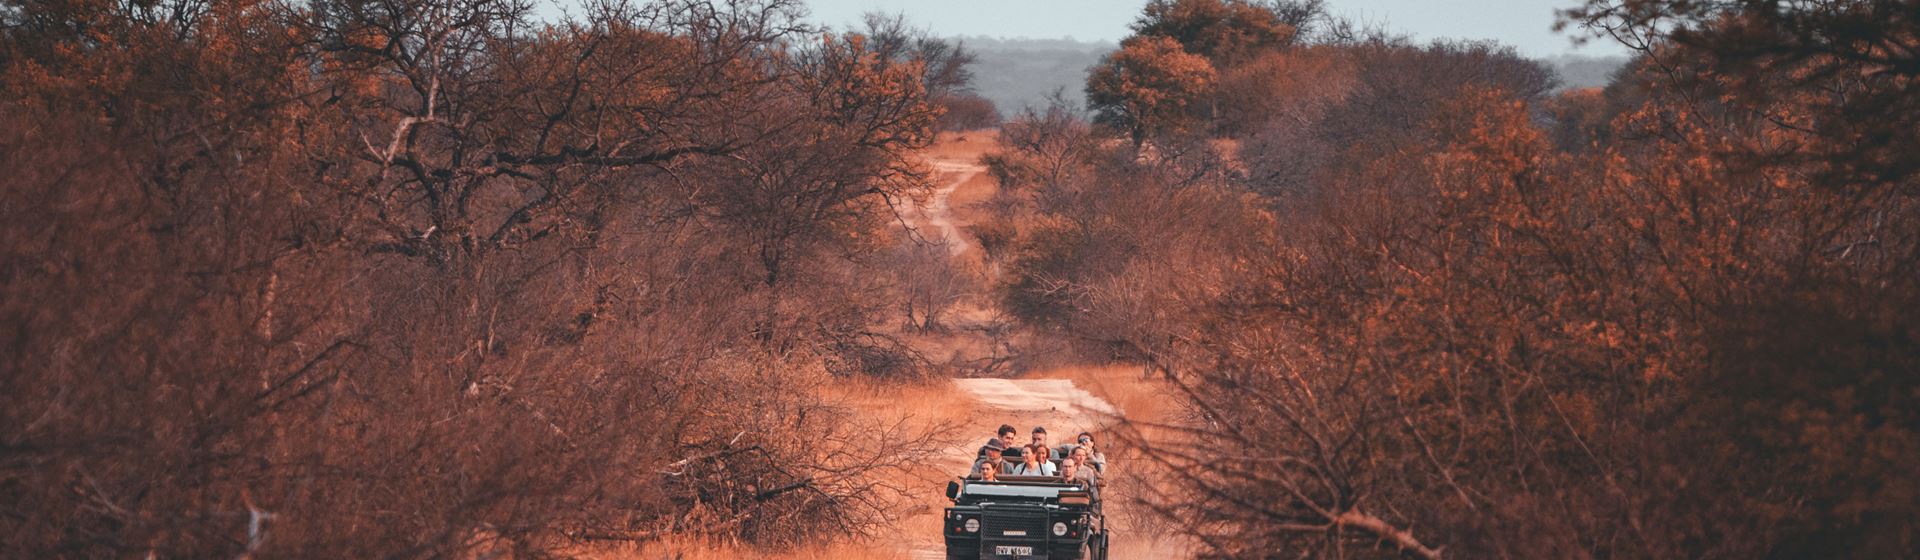 Krugerpark, Zuid-Afrika. Een jeep rijdt in de verte over een zandweg.